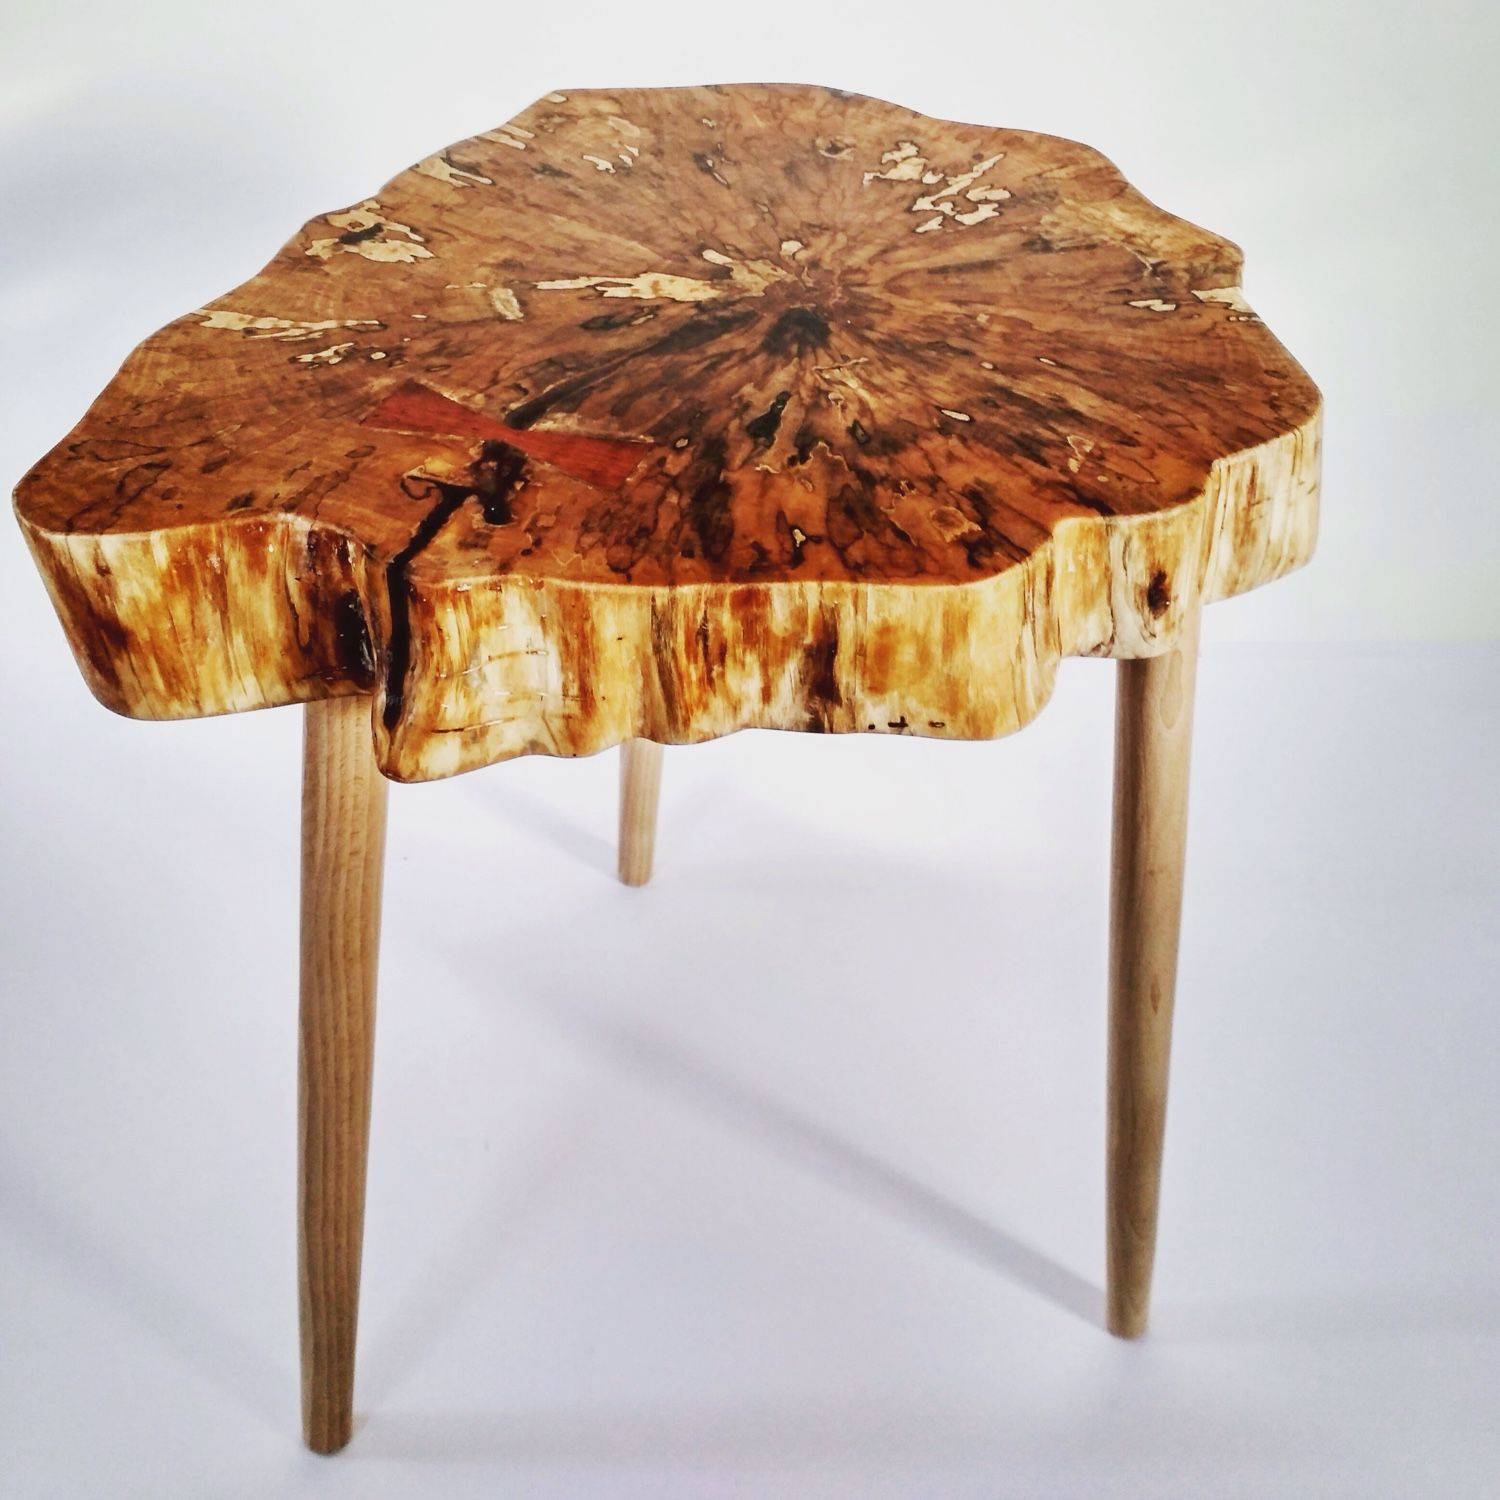 Журнальный стол из натурального дерева — виды и особенности моделей